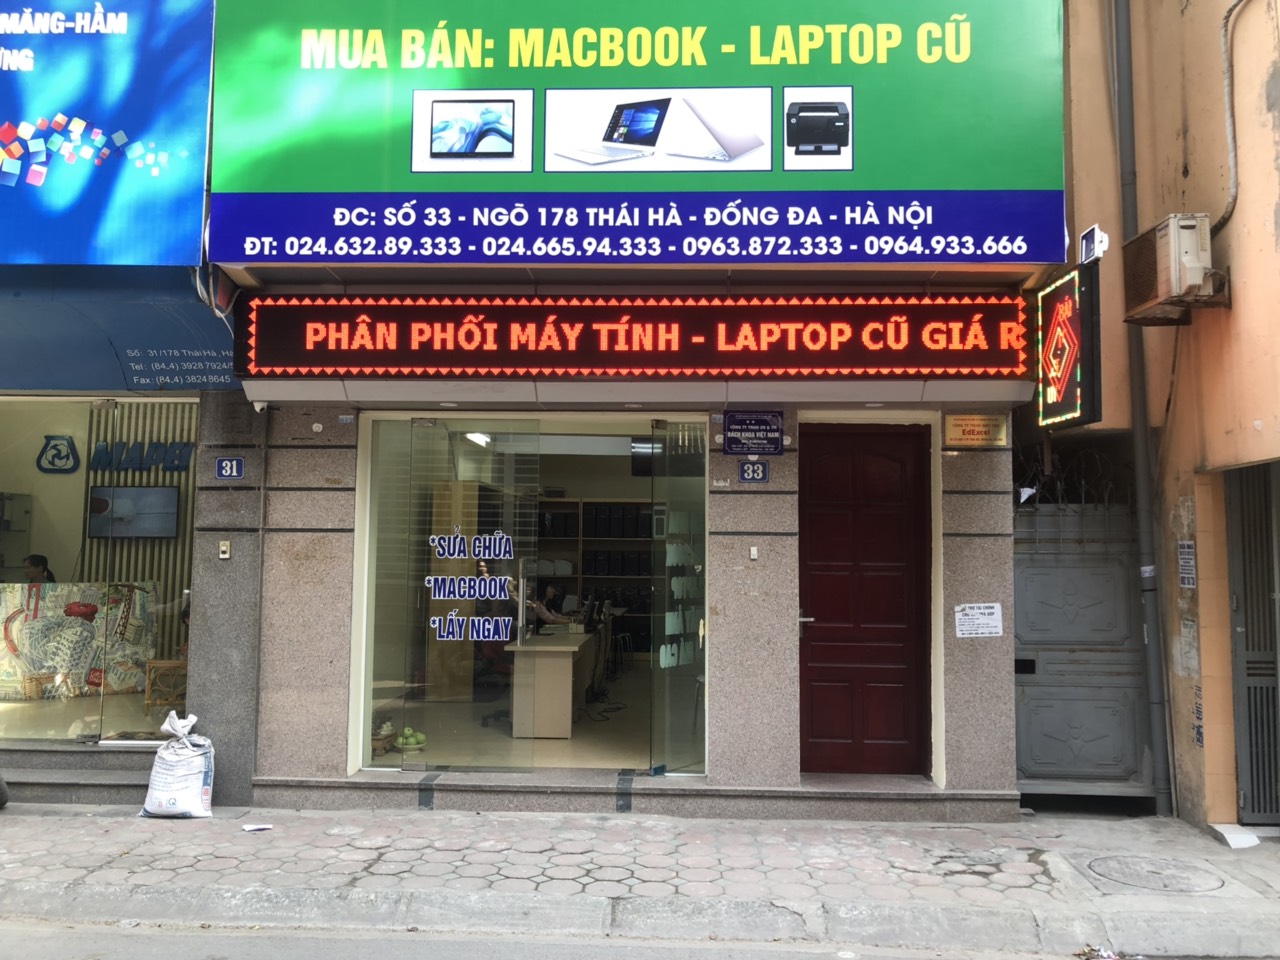 Laptop Bách Khoa - Đơn vị thu mua máy tĩnh cũ lâu năm